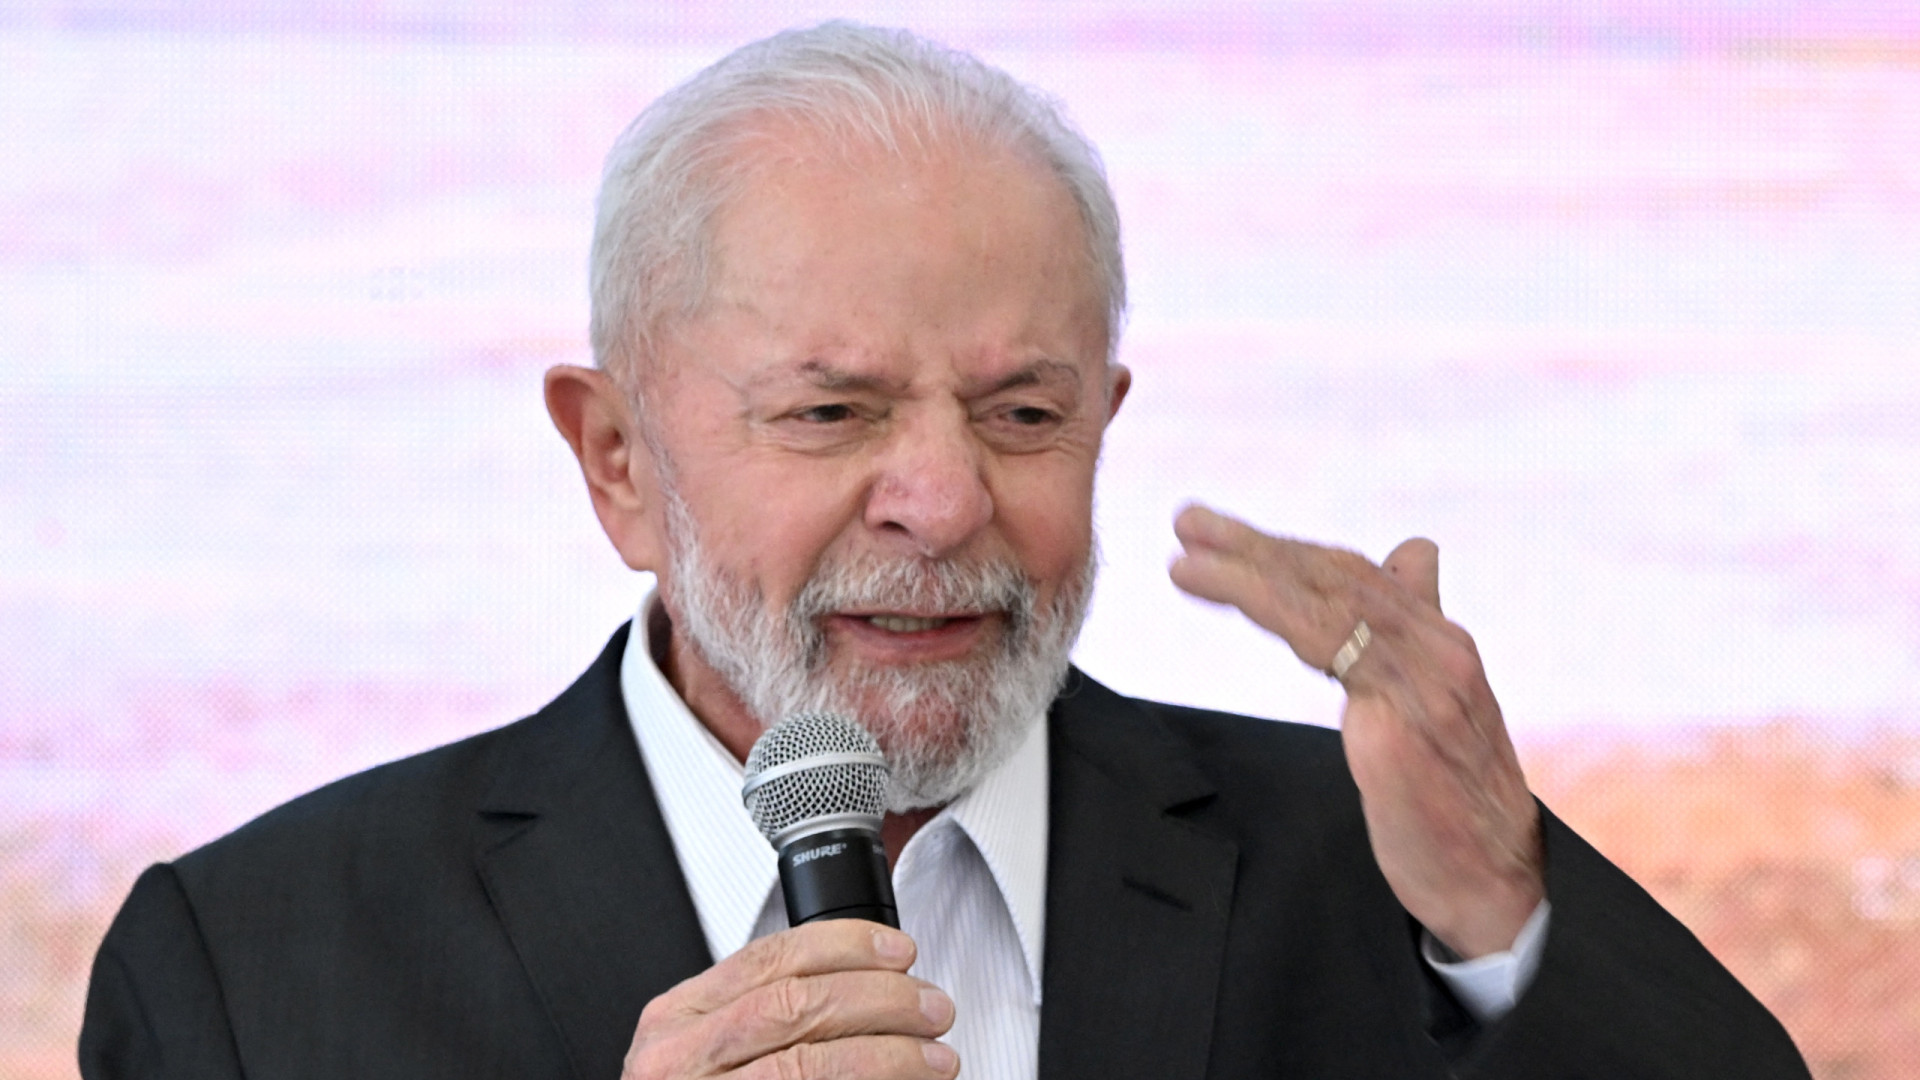 'Vitória para a democracia', diz Lula sobre libertação de Assange